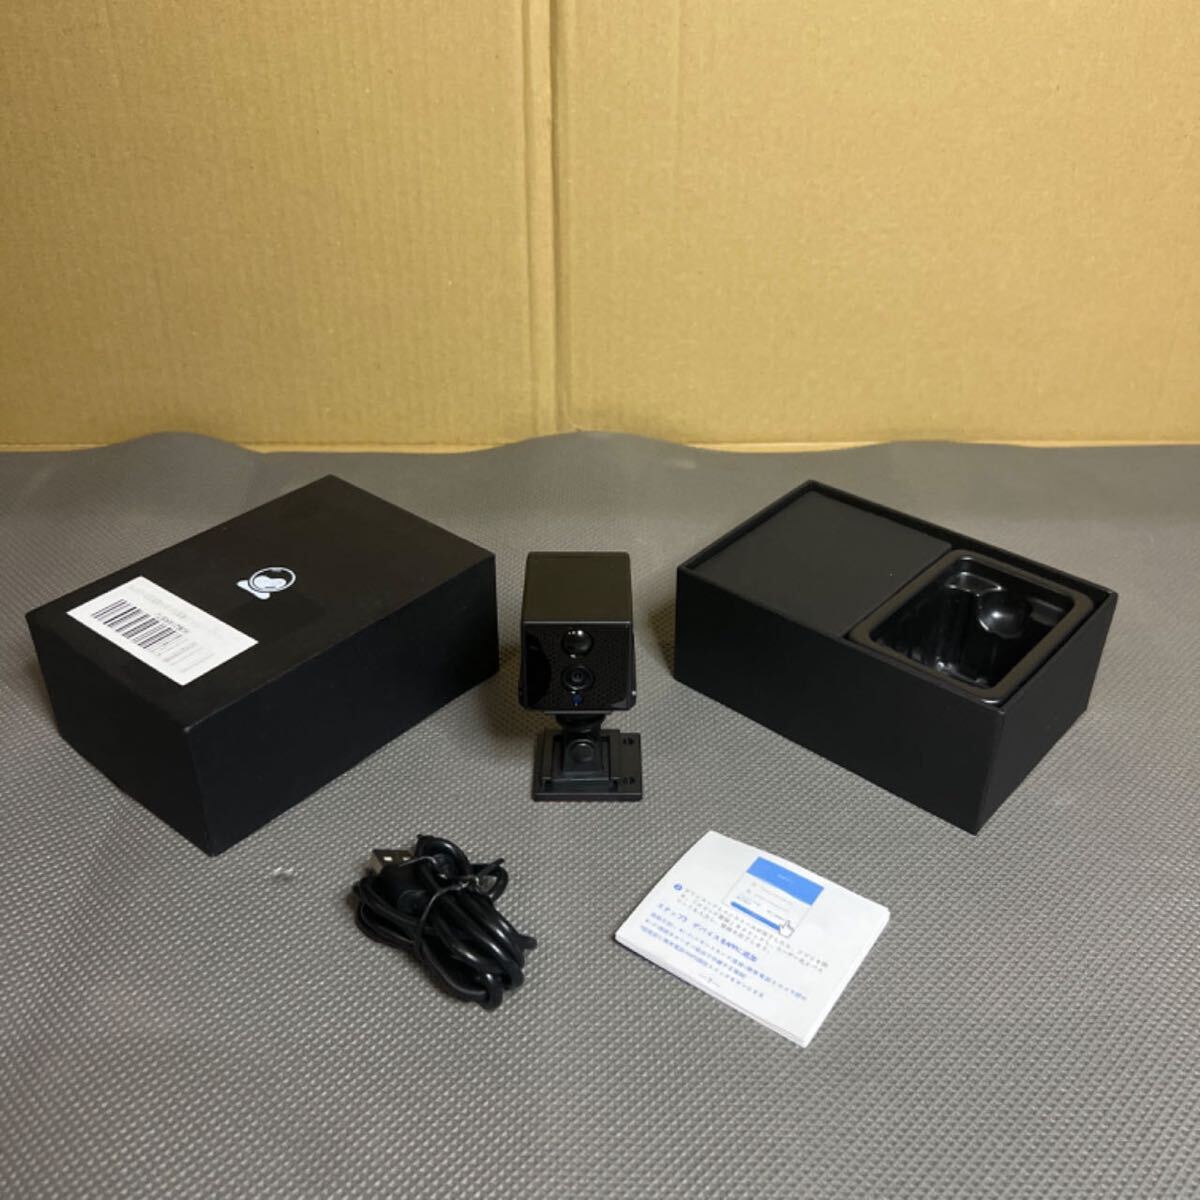 WIFI камера HD качество изображения маленький размер камера камера системы безопасности перемещение body обнаружение длина час видеозапись запись аккумулятор встроенный 